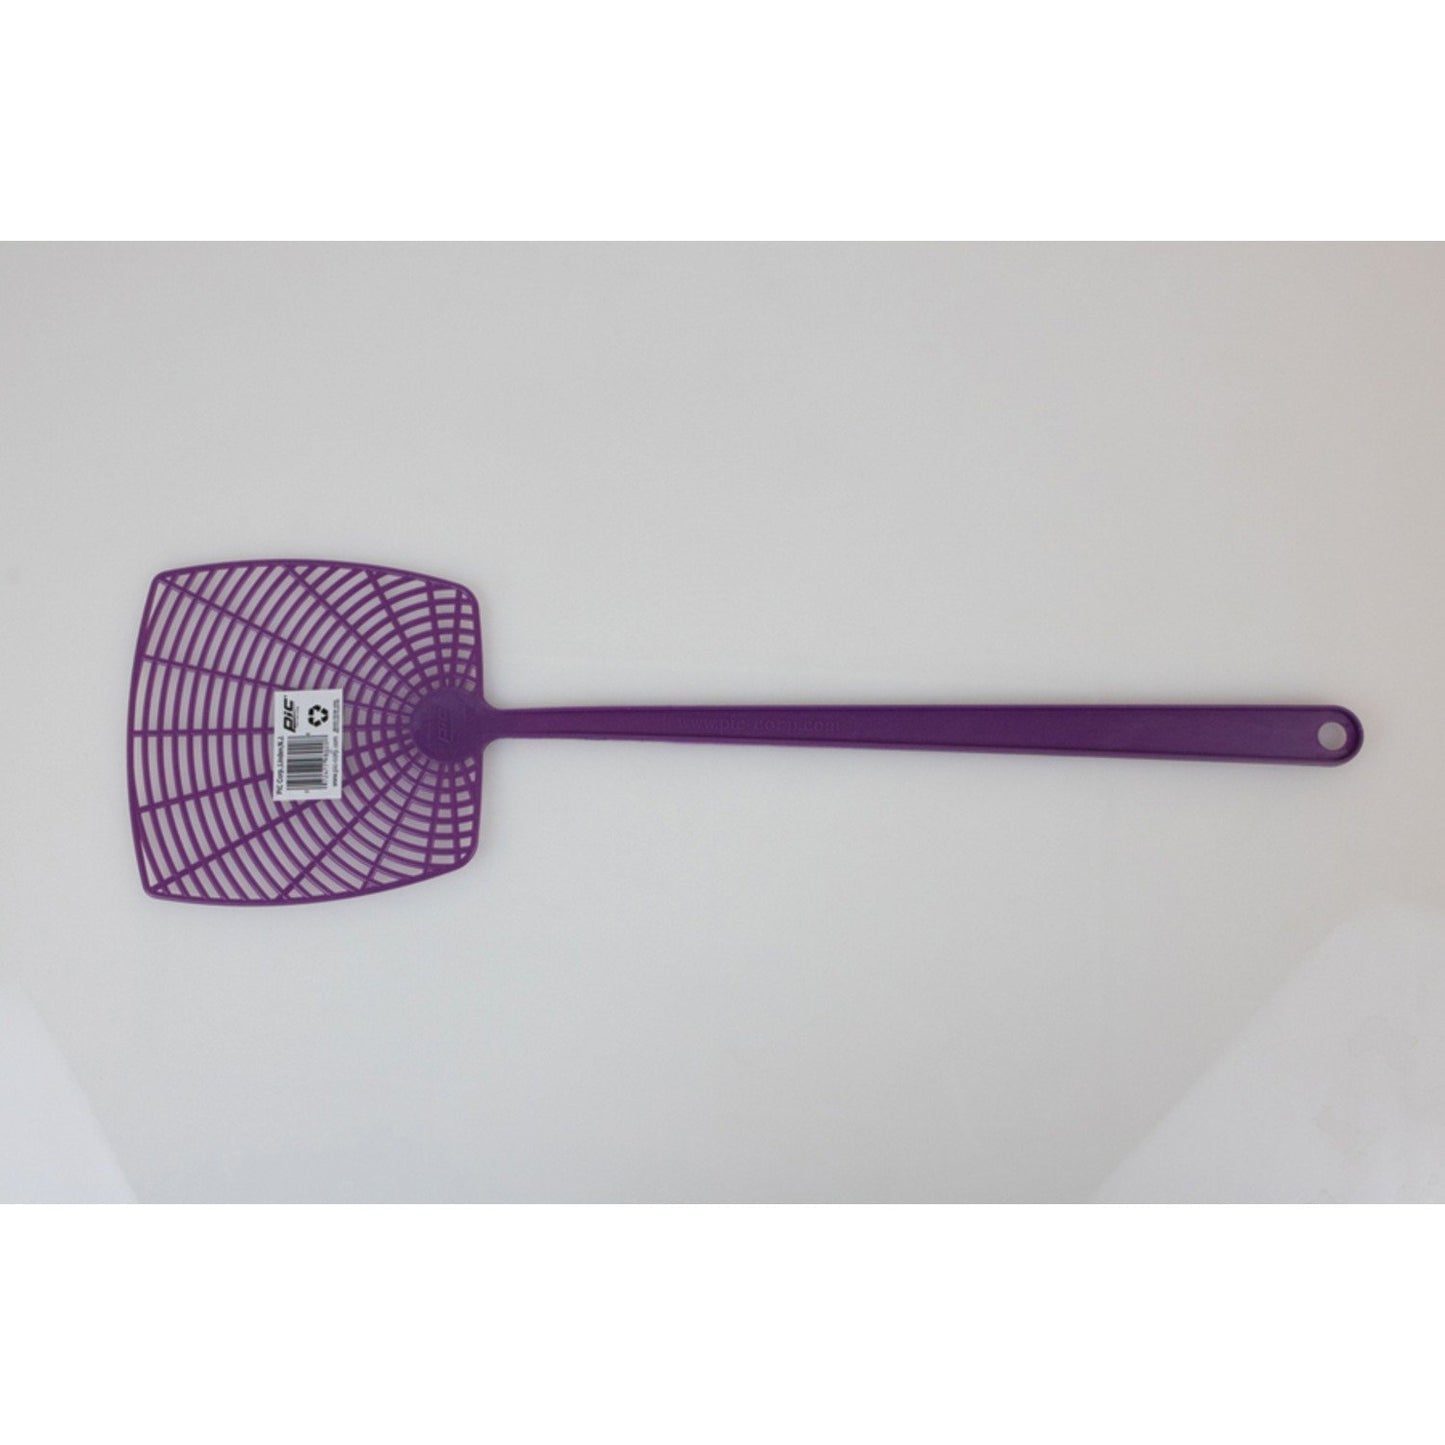 PIC 274-INN Plastic Fly Swatter